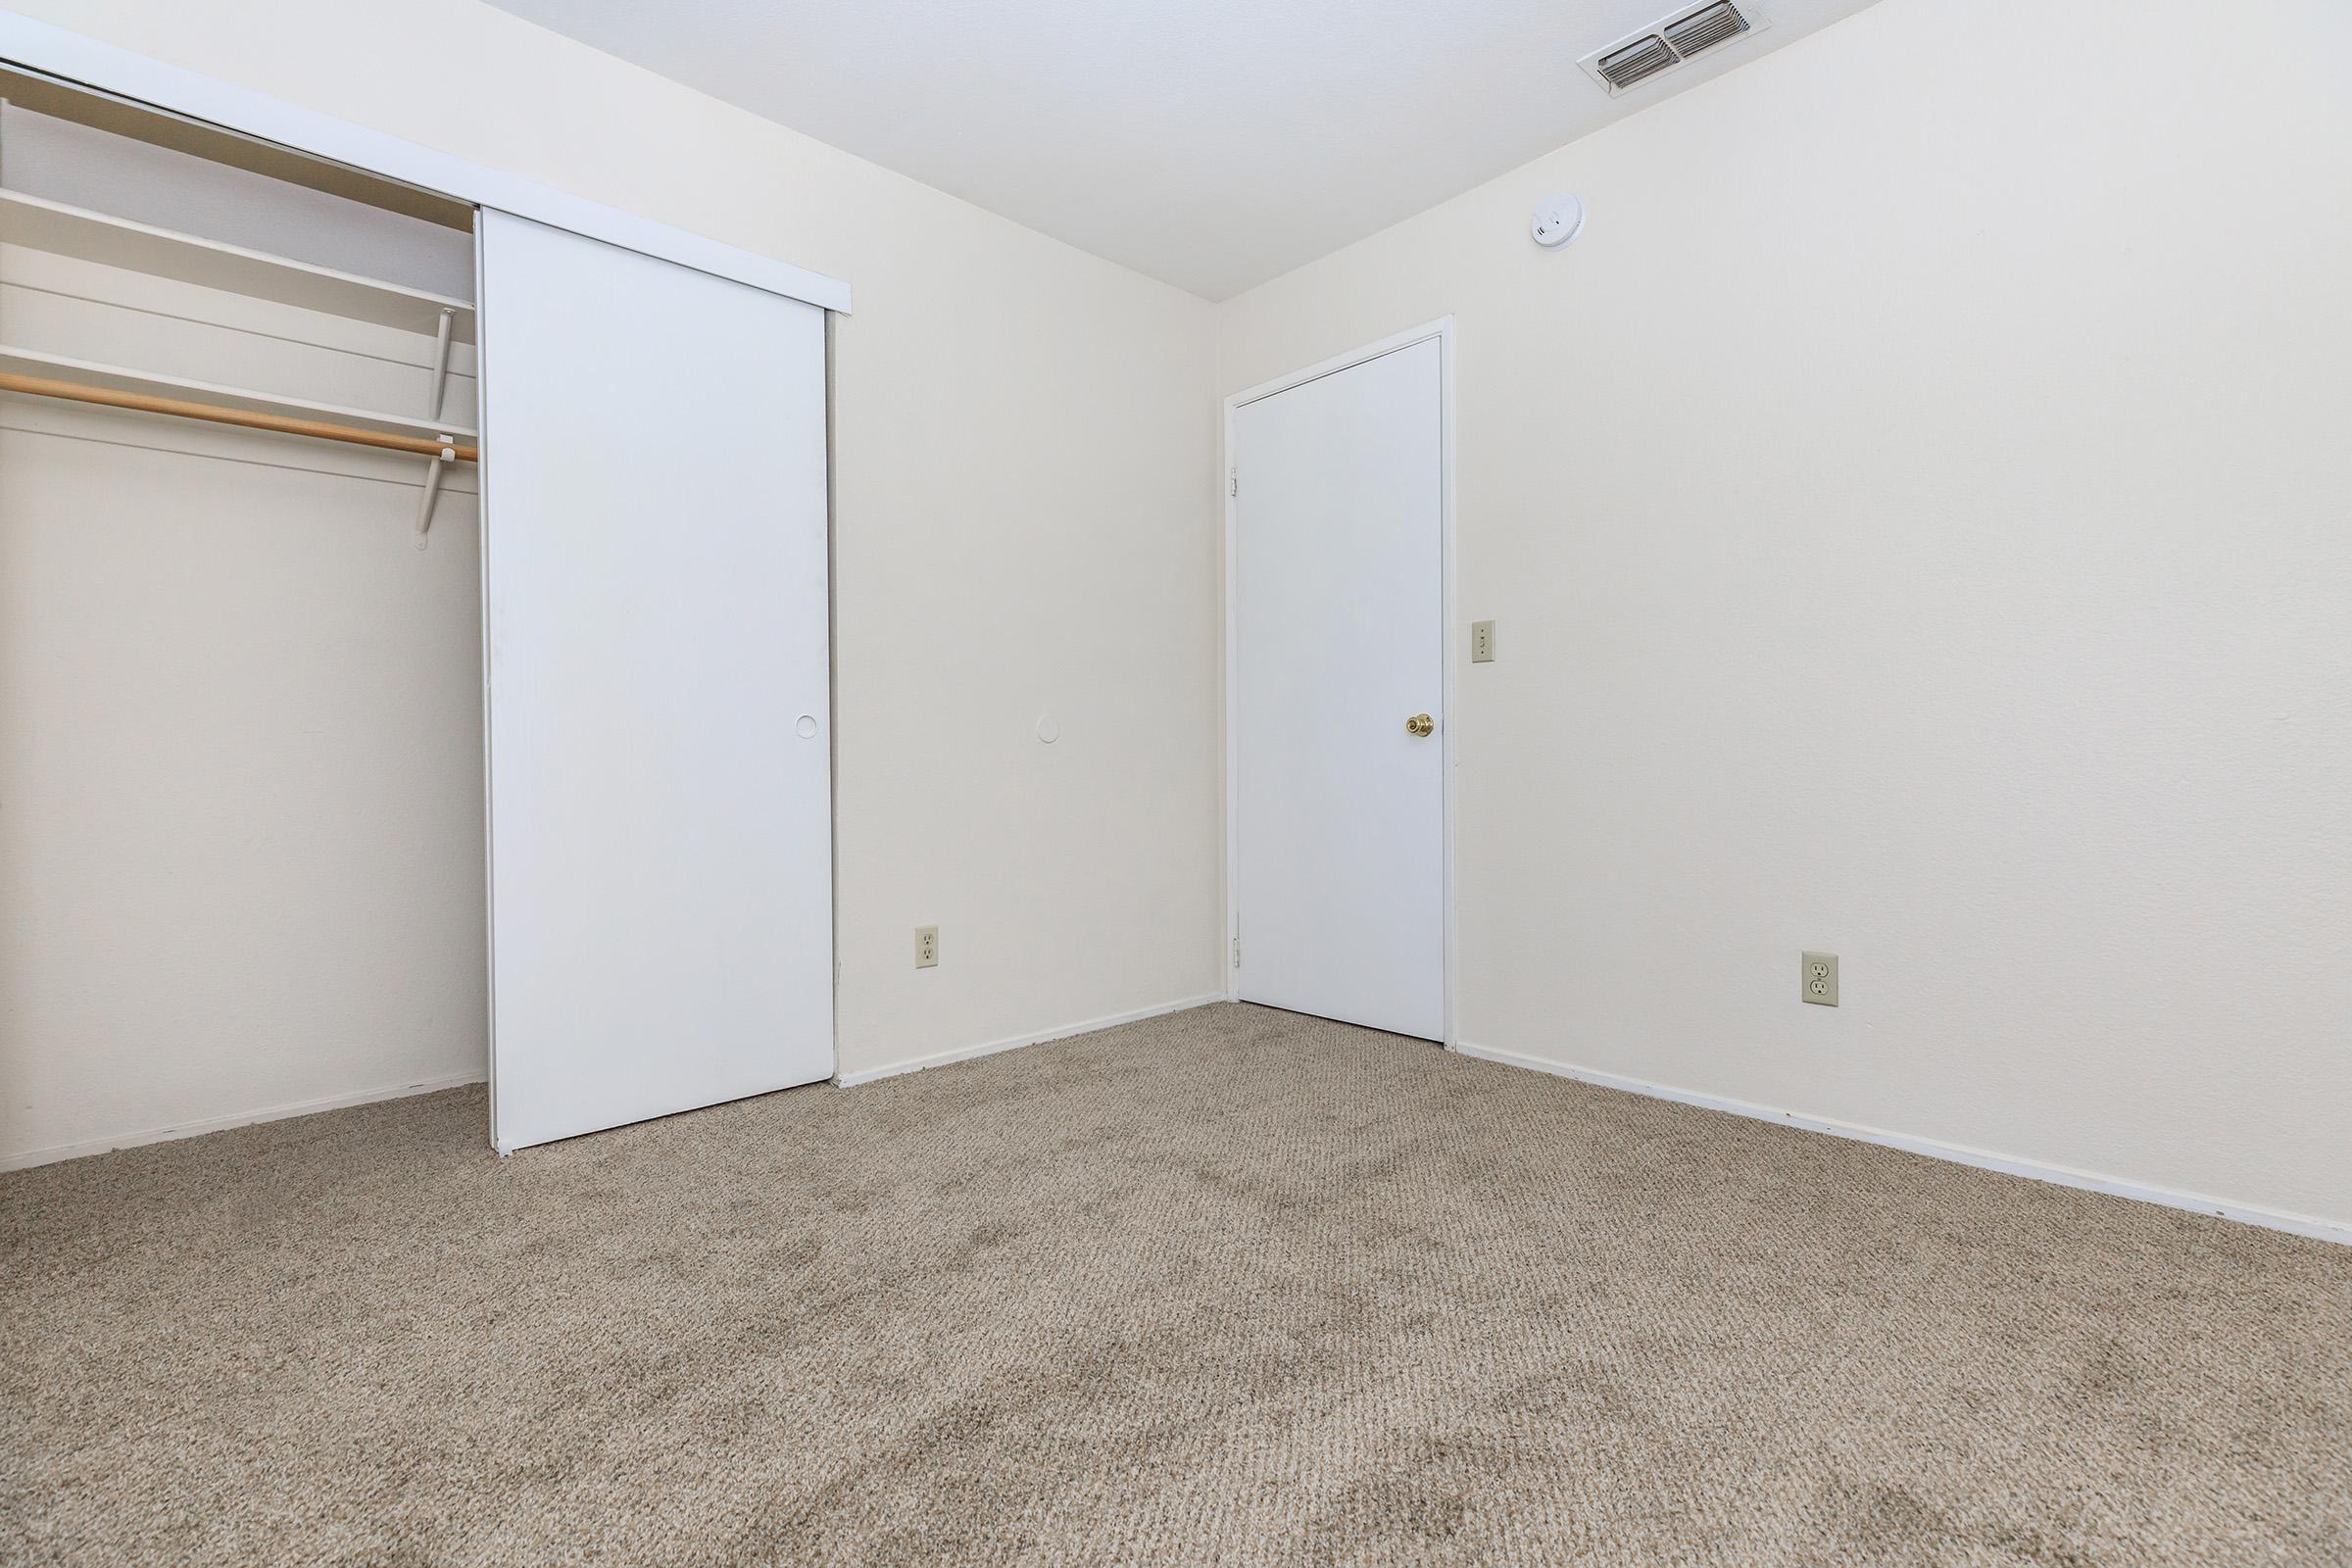 Carpeted bedroom with open sliding closet door